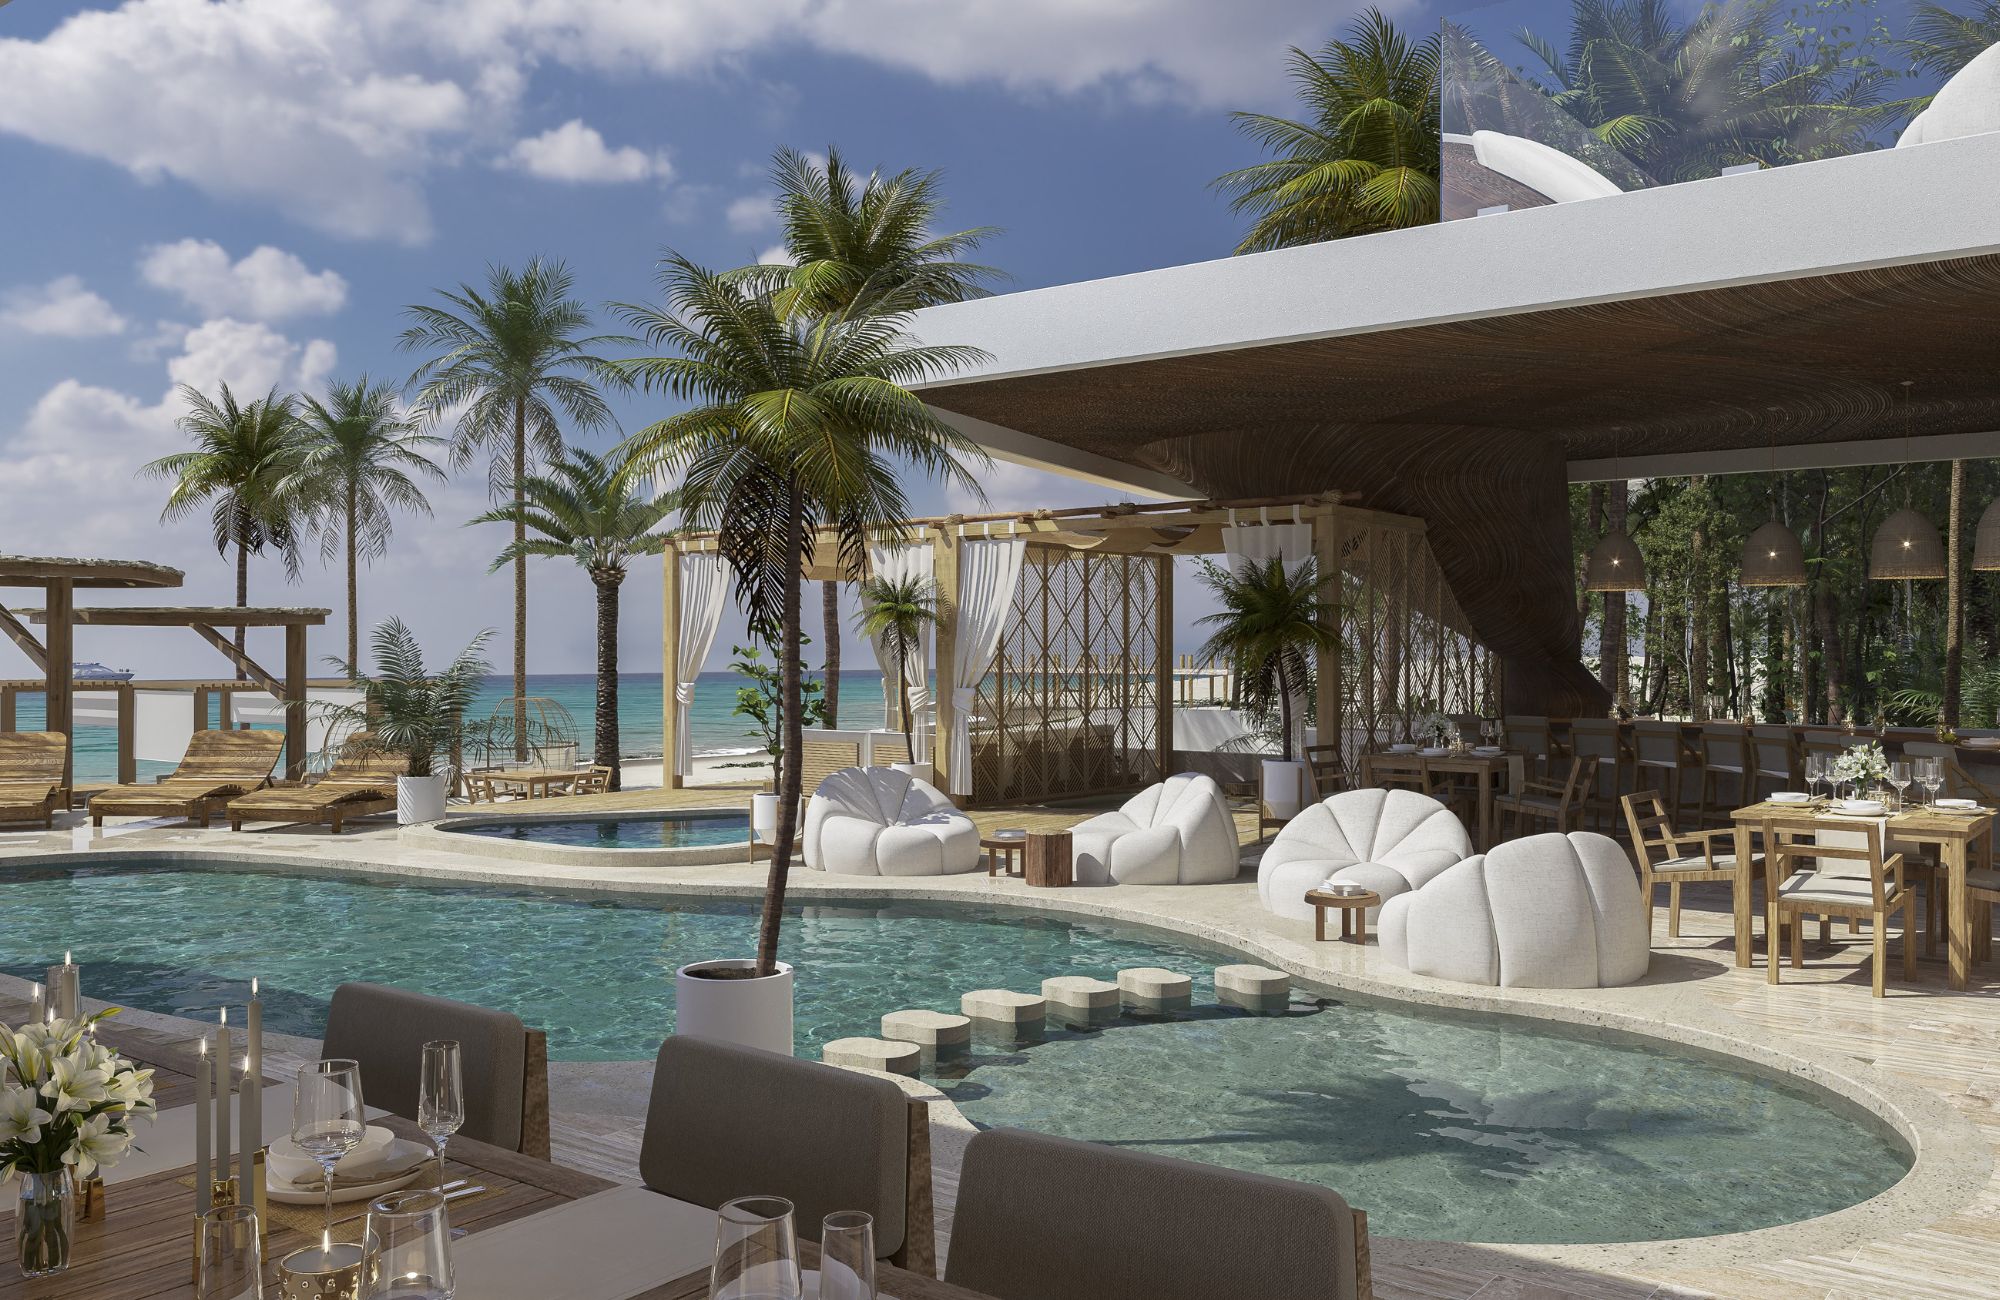 Condominio con Club de playa frente al mar, Alberca, Spa, y business Center, en  Costa mujeres, Cancun.